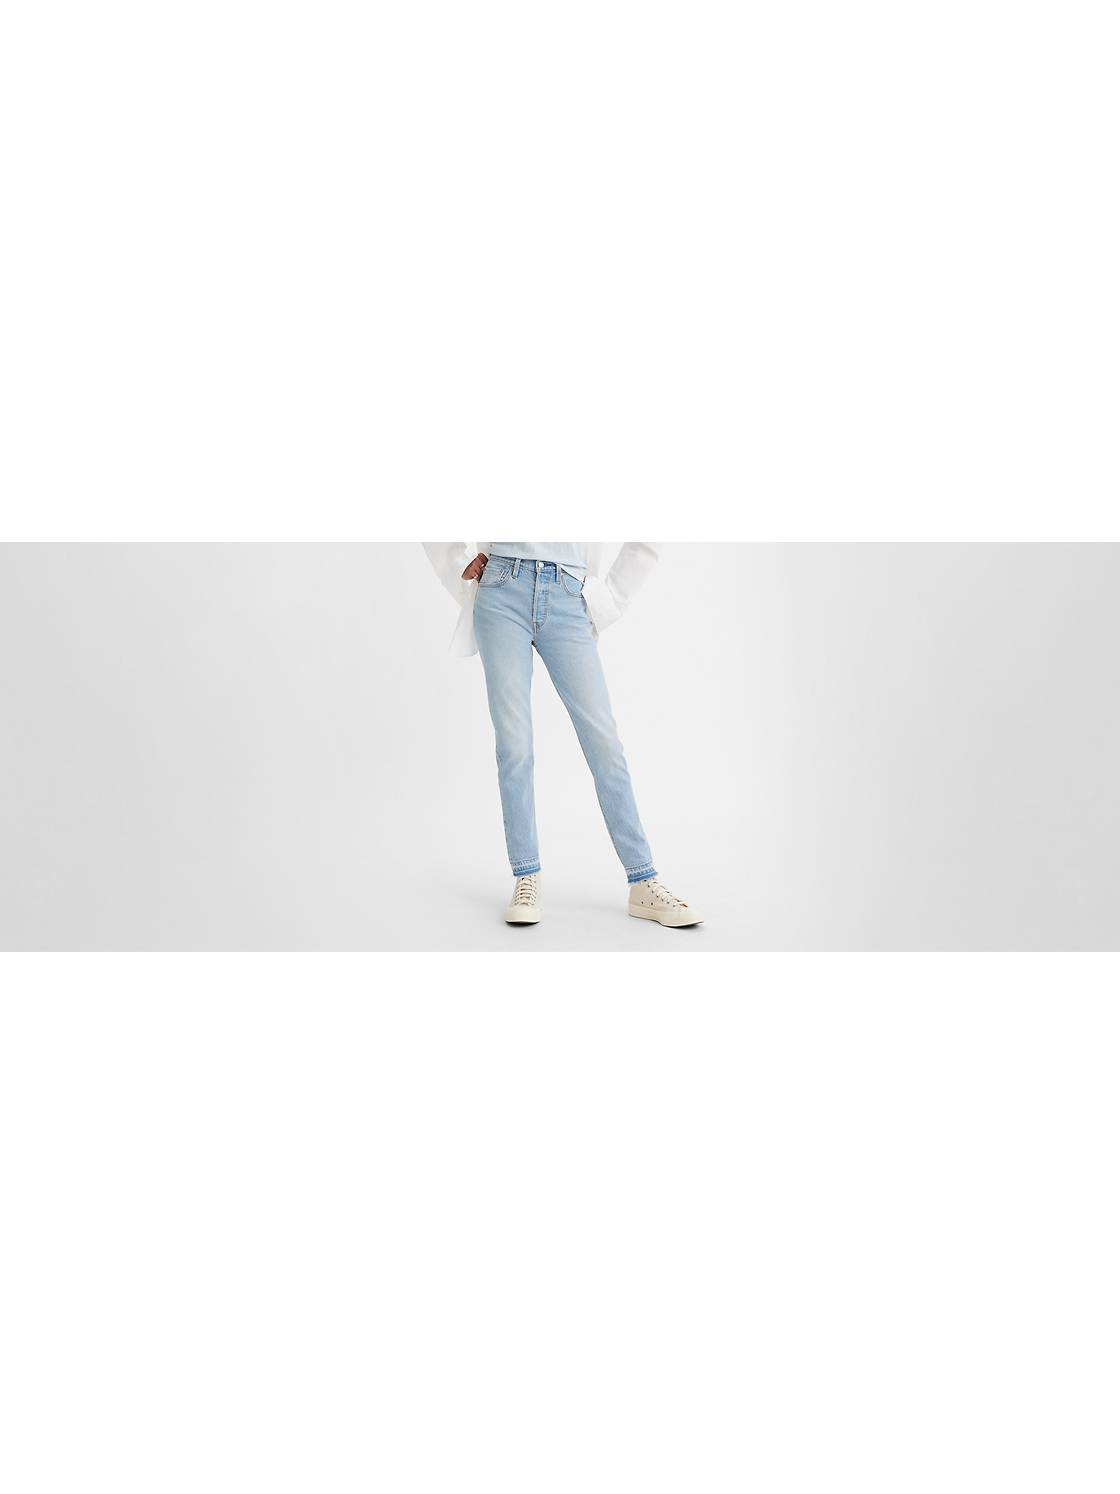 Las mejores ofertas en Pantalones Ajustados Blanco sin marca para